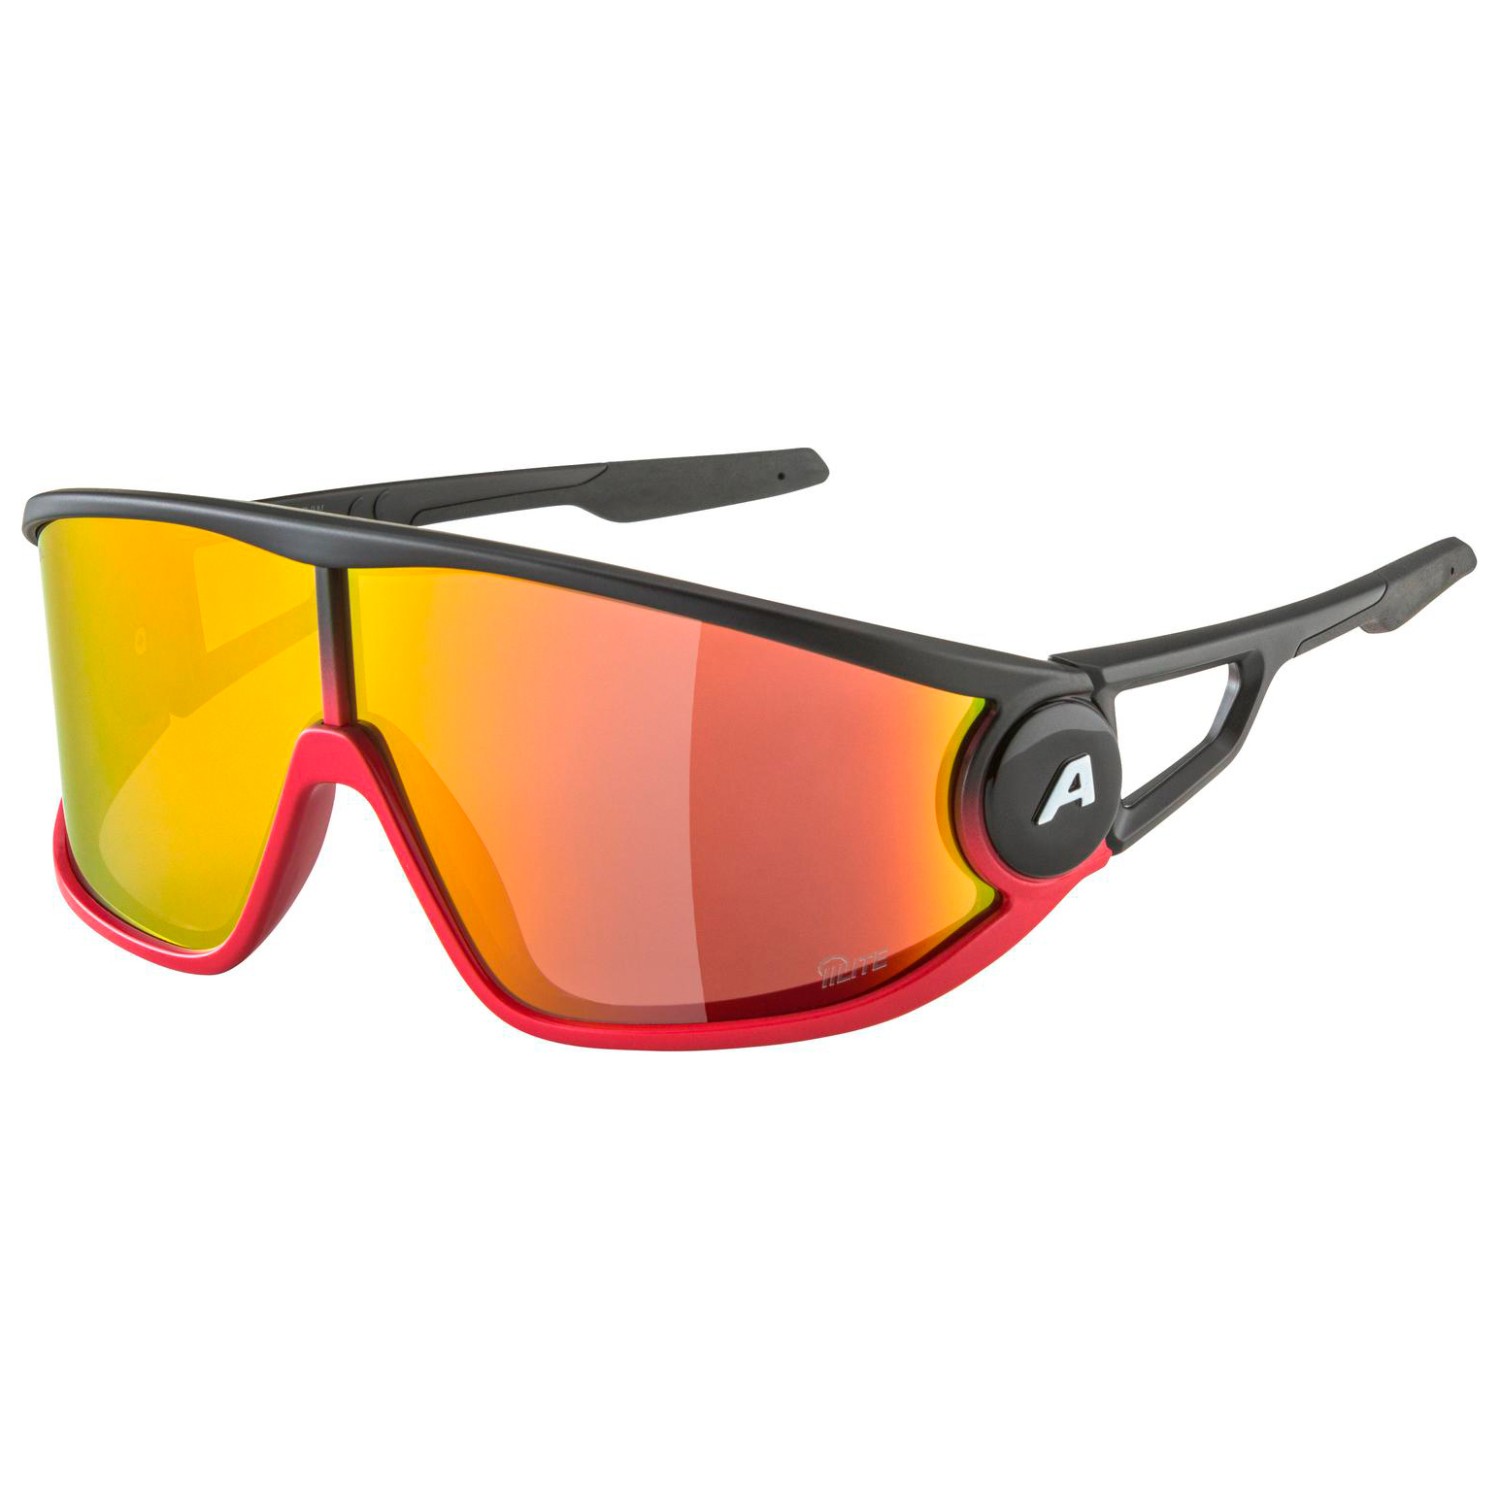 Солнцезащитные очки Alpina Legend Q Lite Cat 3, цвет Black/Red Matt очки солнцезащитные alpina luzy белый пурпурный зеркальный a8571310